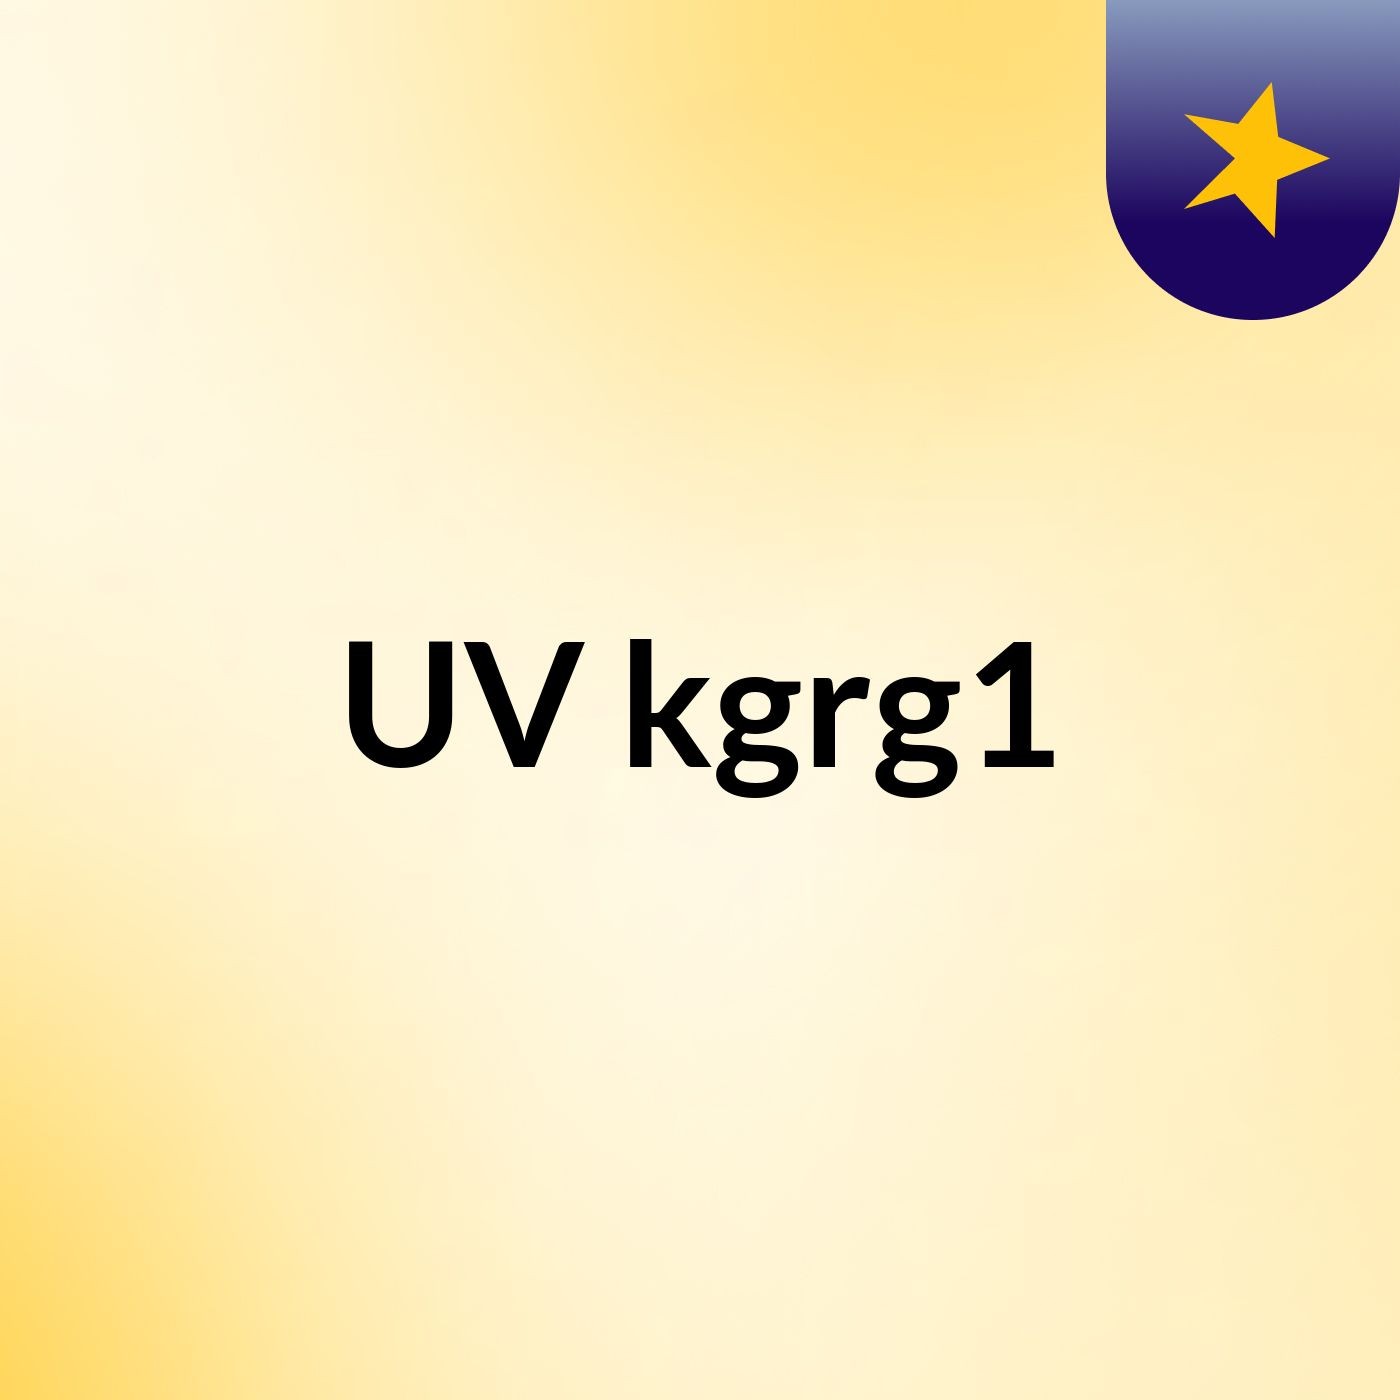 UV kgrg1